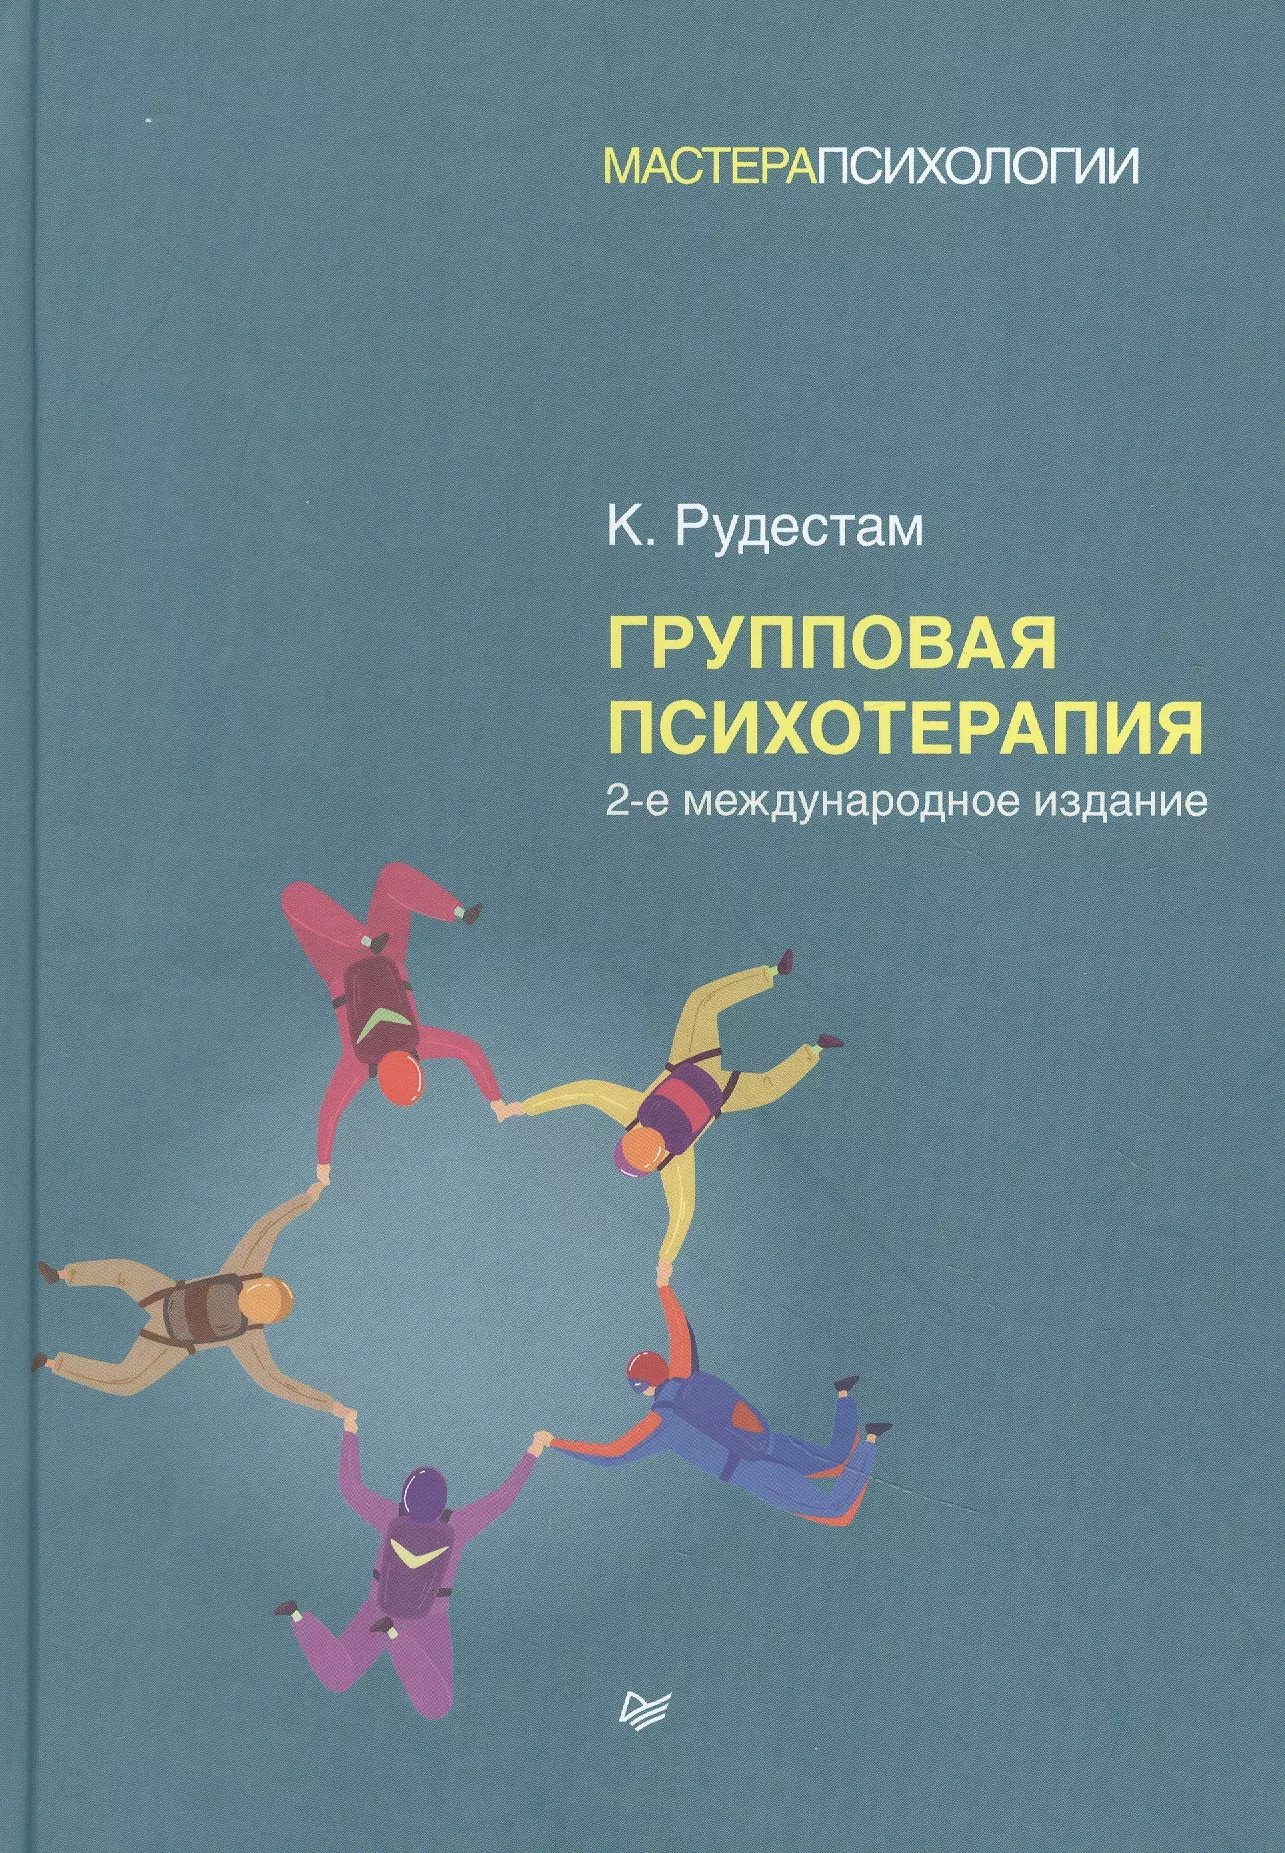 психотерапия шизофрении 3 е изд Групповая психотерапия. 2-е международное изд.